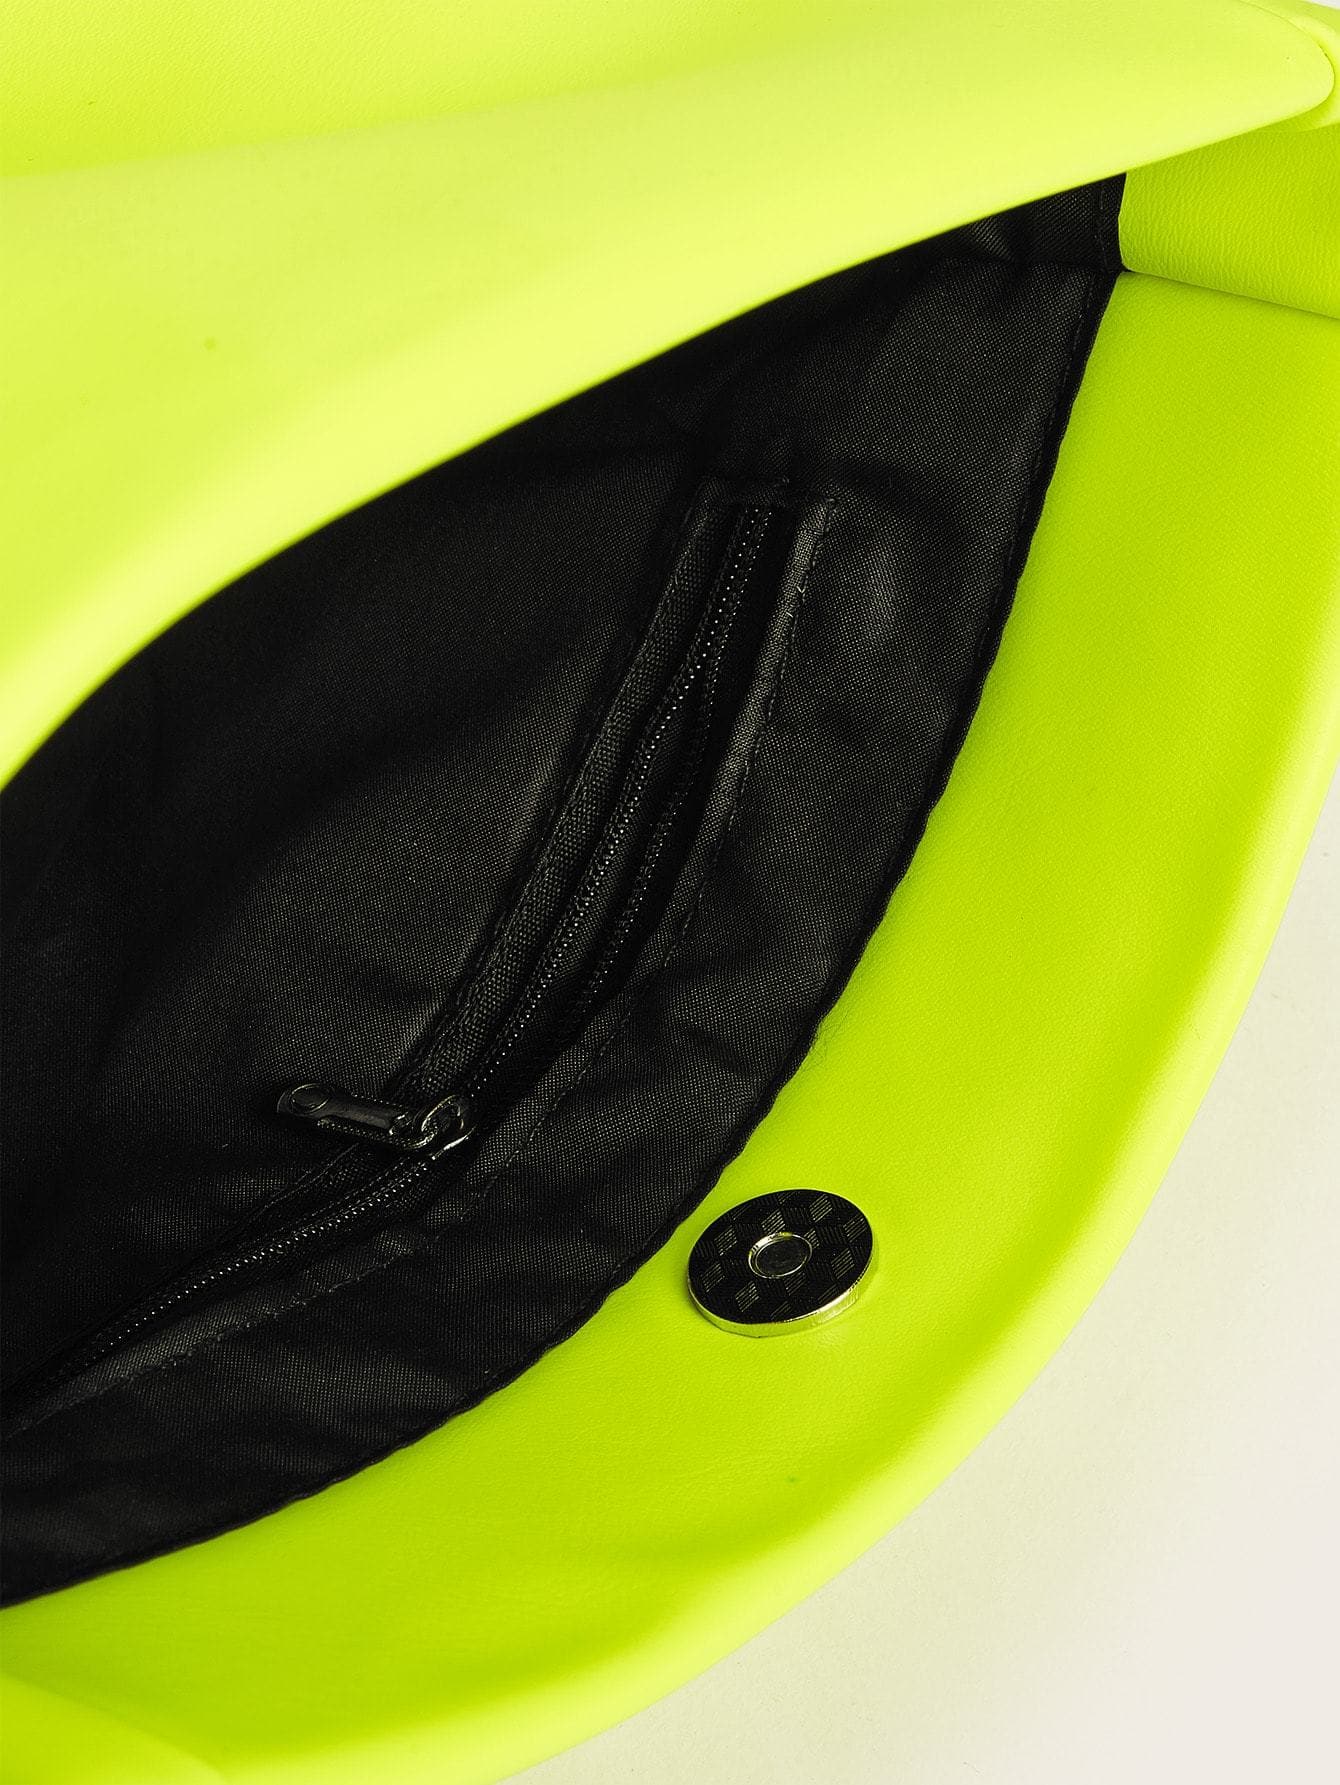 Neon Lime Fold Over Chain Bag